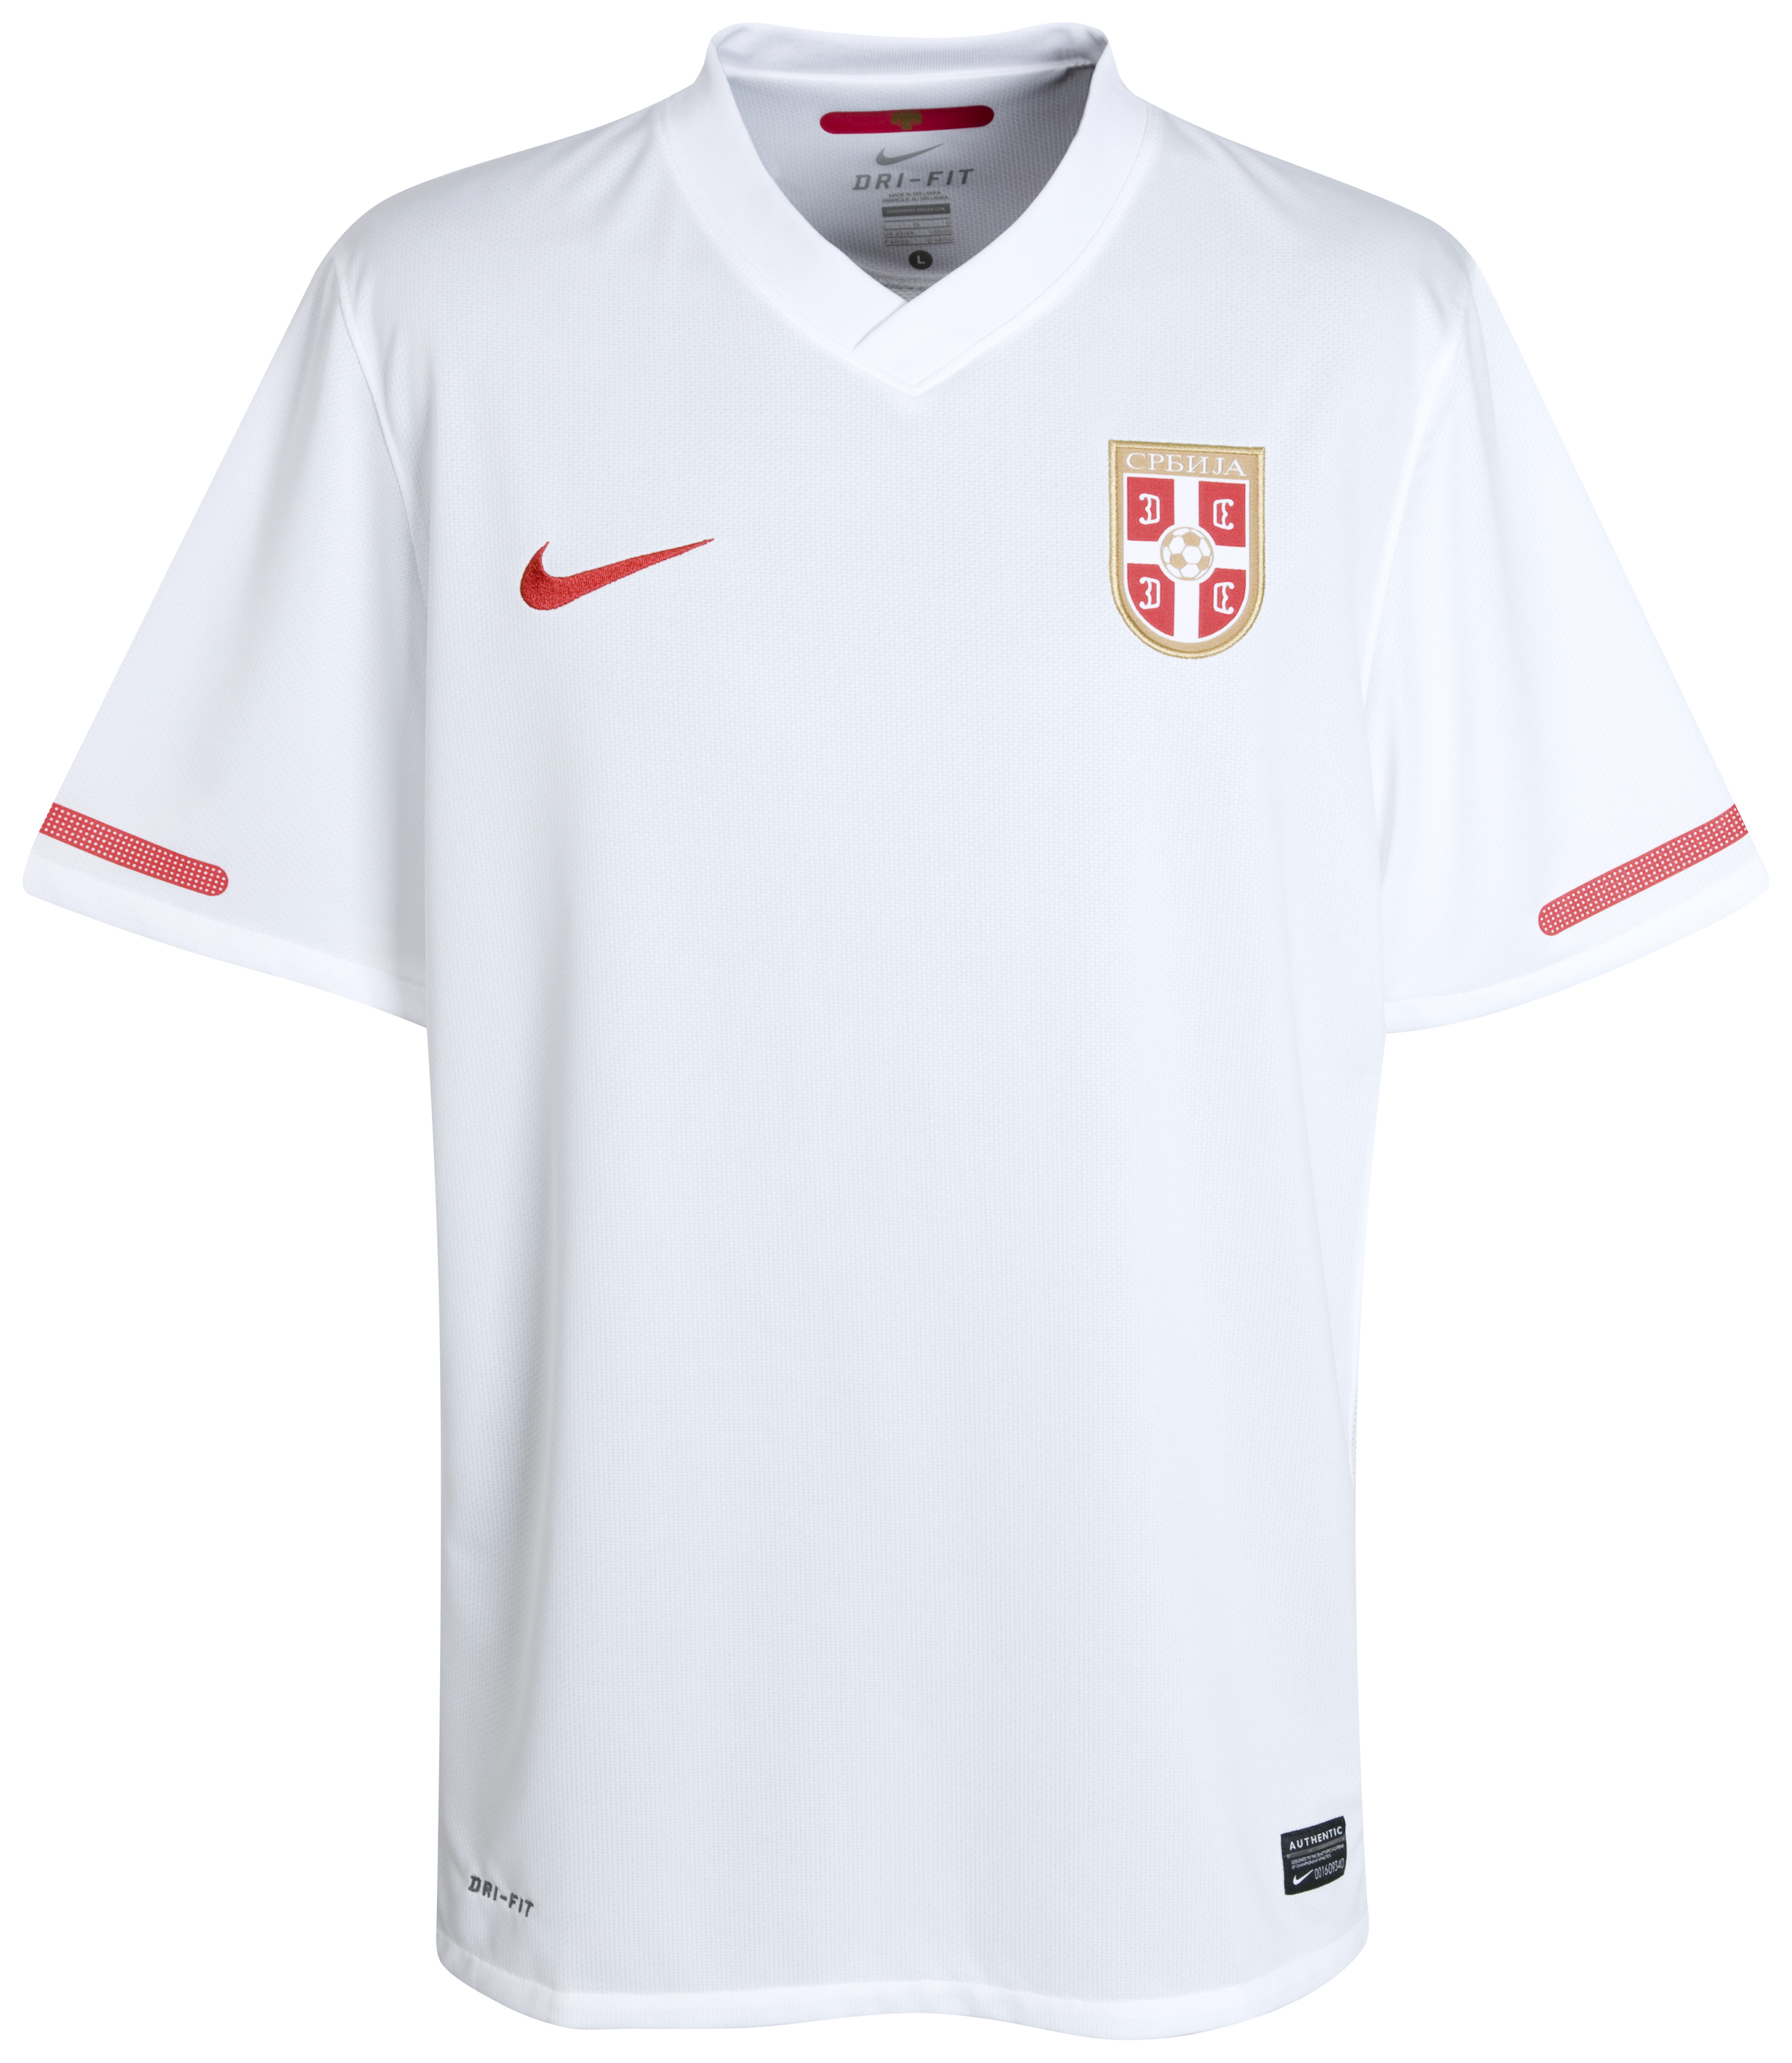 .¸-(_ (قمصان جميع المنتخبات لكأس العالم 2010) _)-,. Kb-65901